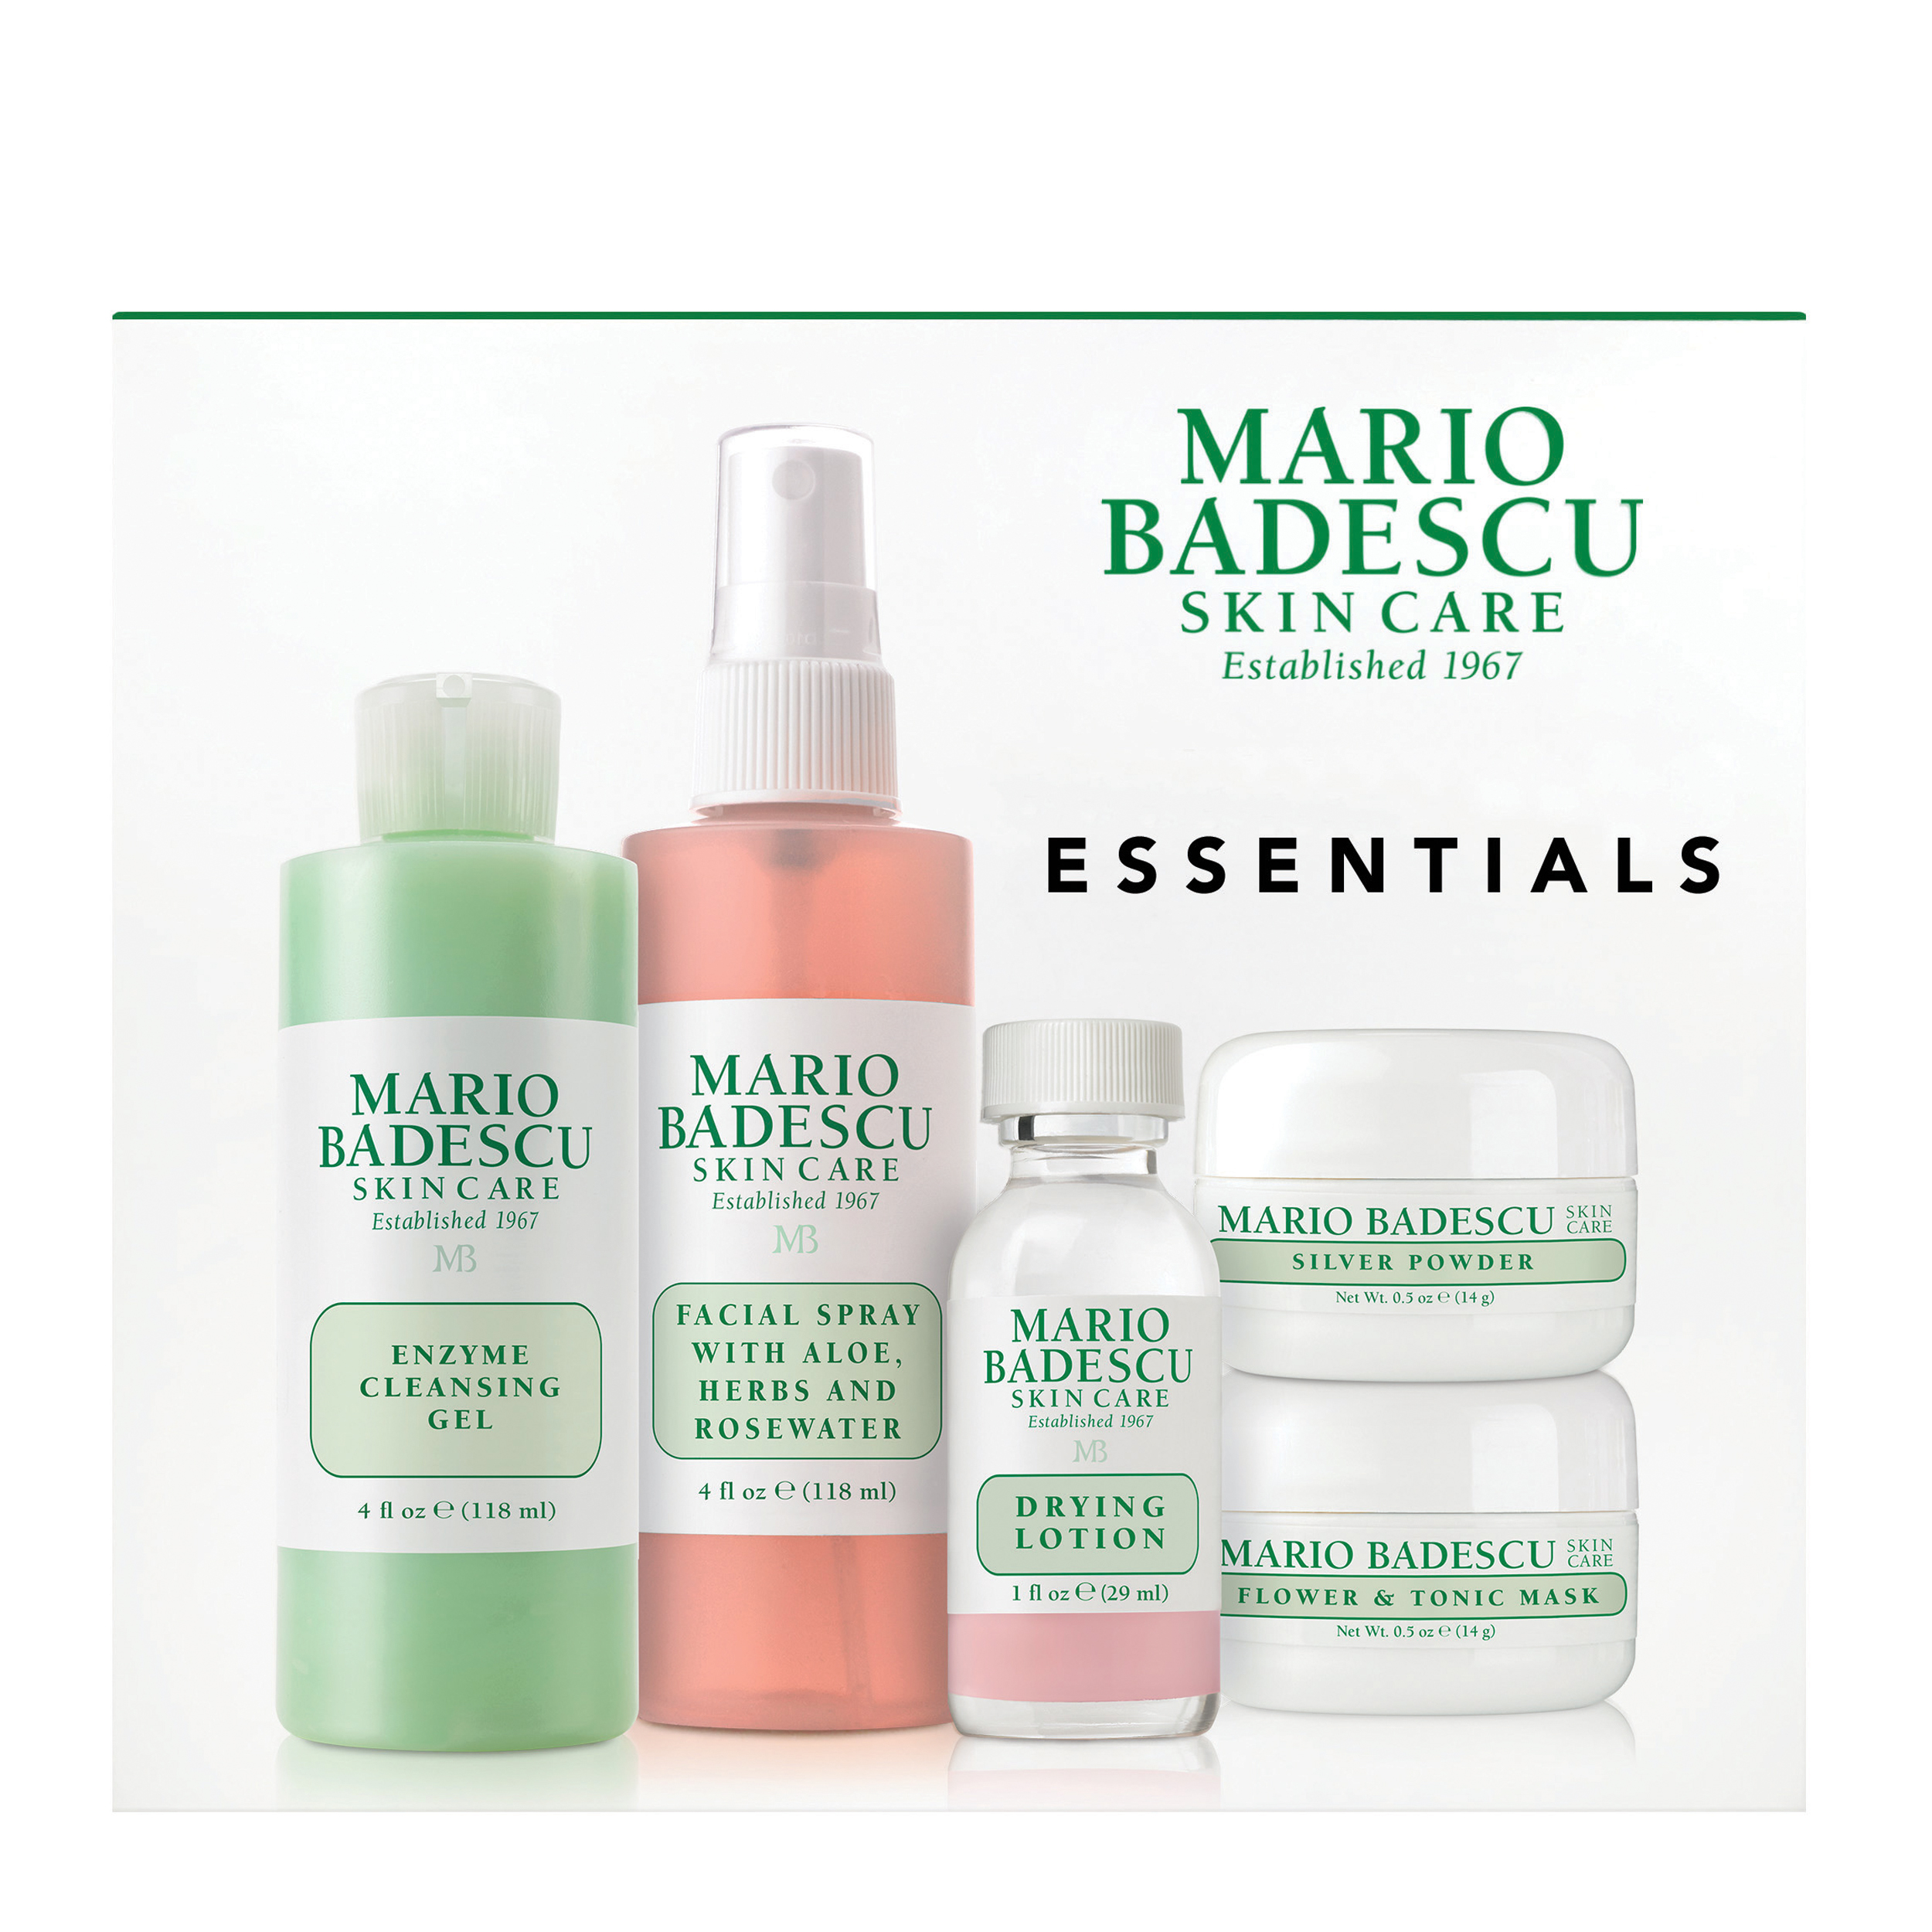 MARIO BADESCU Essentials Skin Care Kit